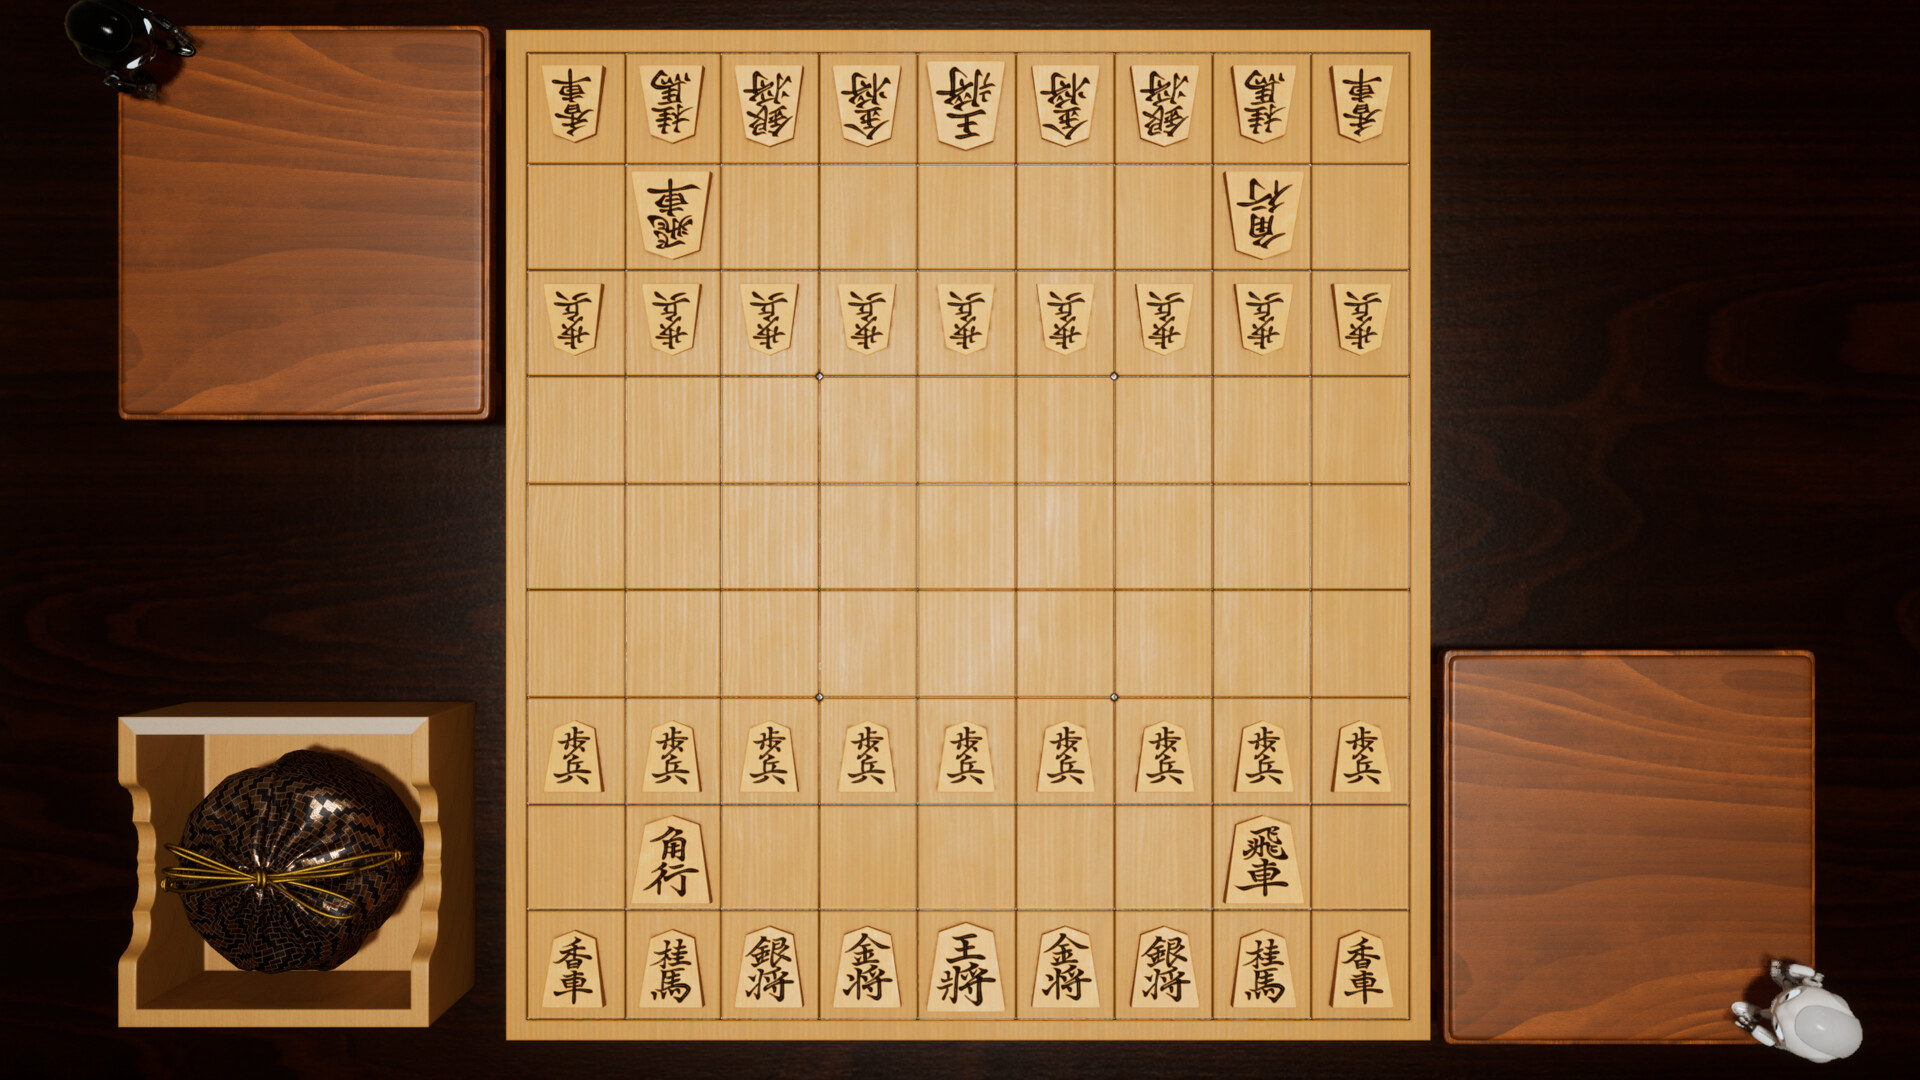 Game Shogi - Japanese Chess Shogi